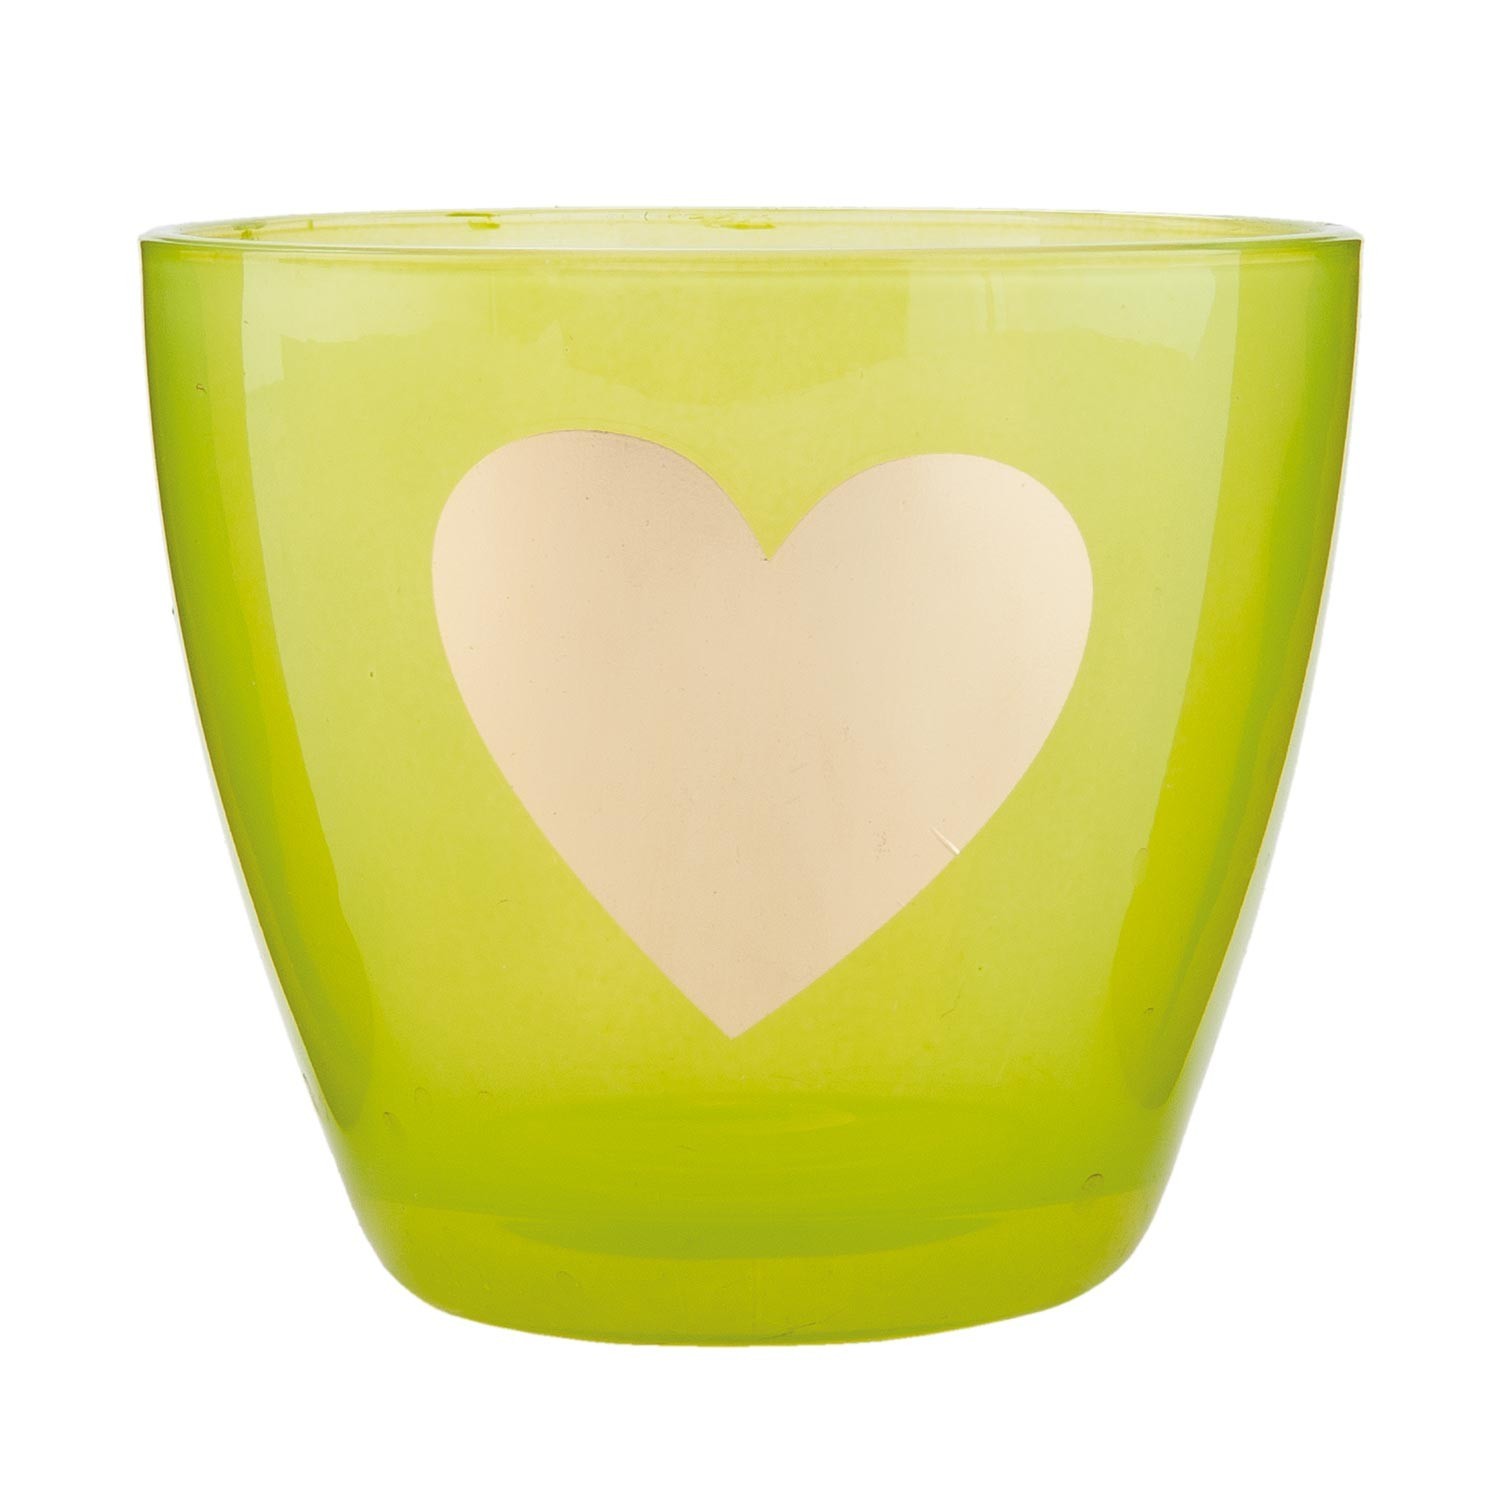 Zelený svícen na čajovou svíčku se srdíčkem - Ø 9*8 cm   Clayre & Eef